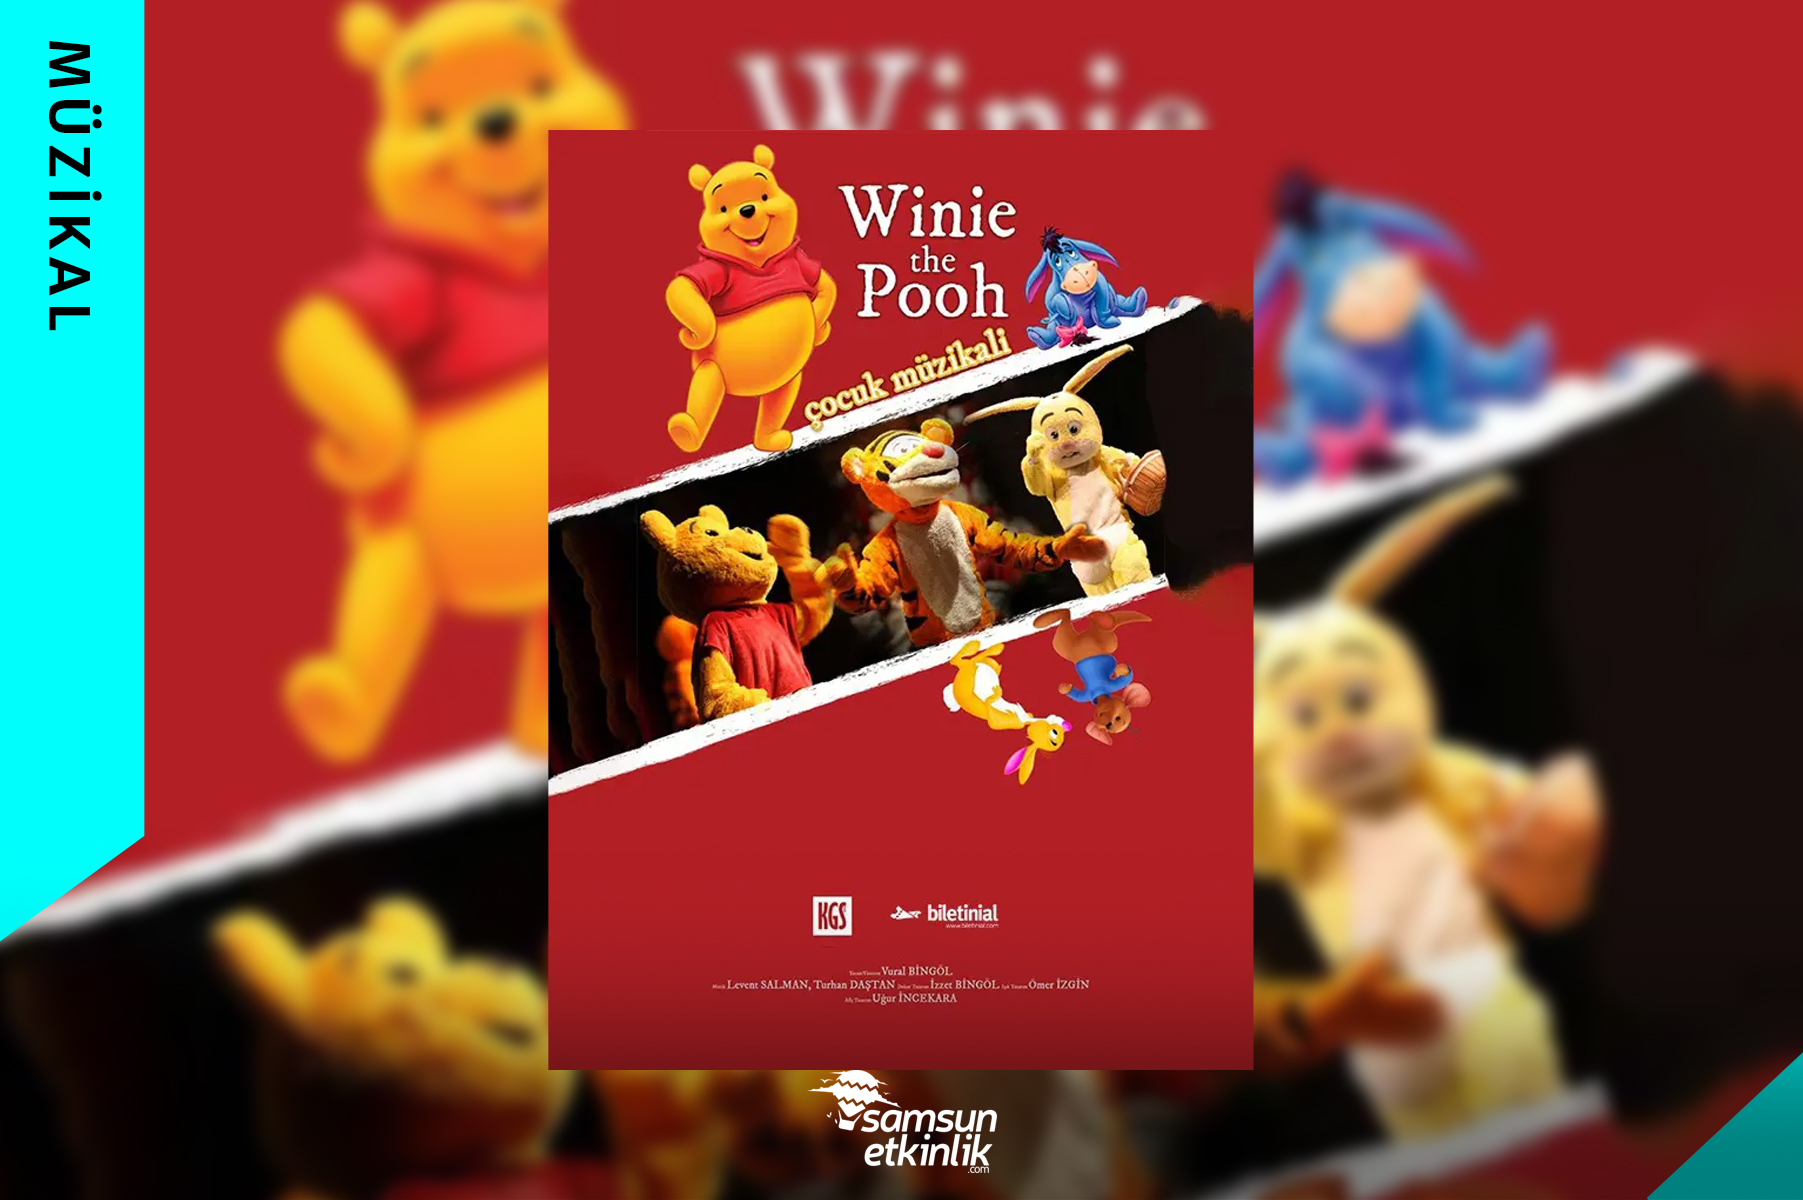 Winie The Pooh Çocuk Müzikali